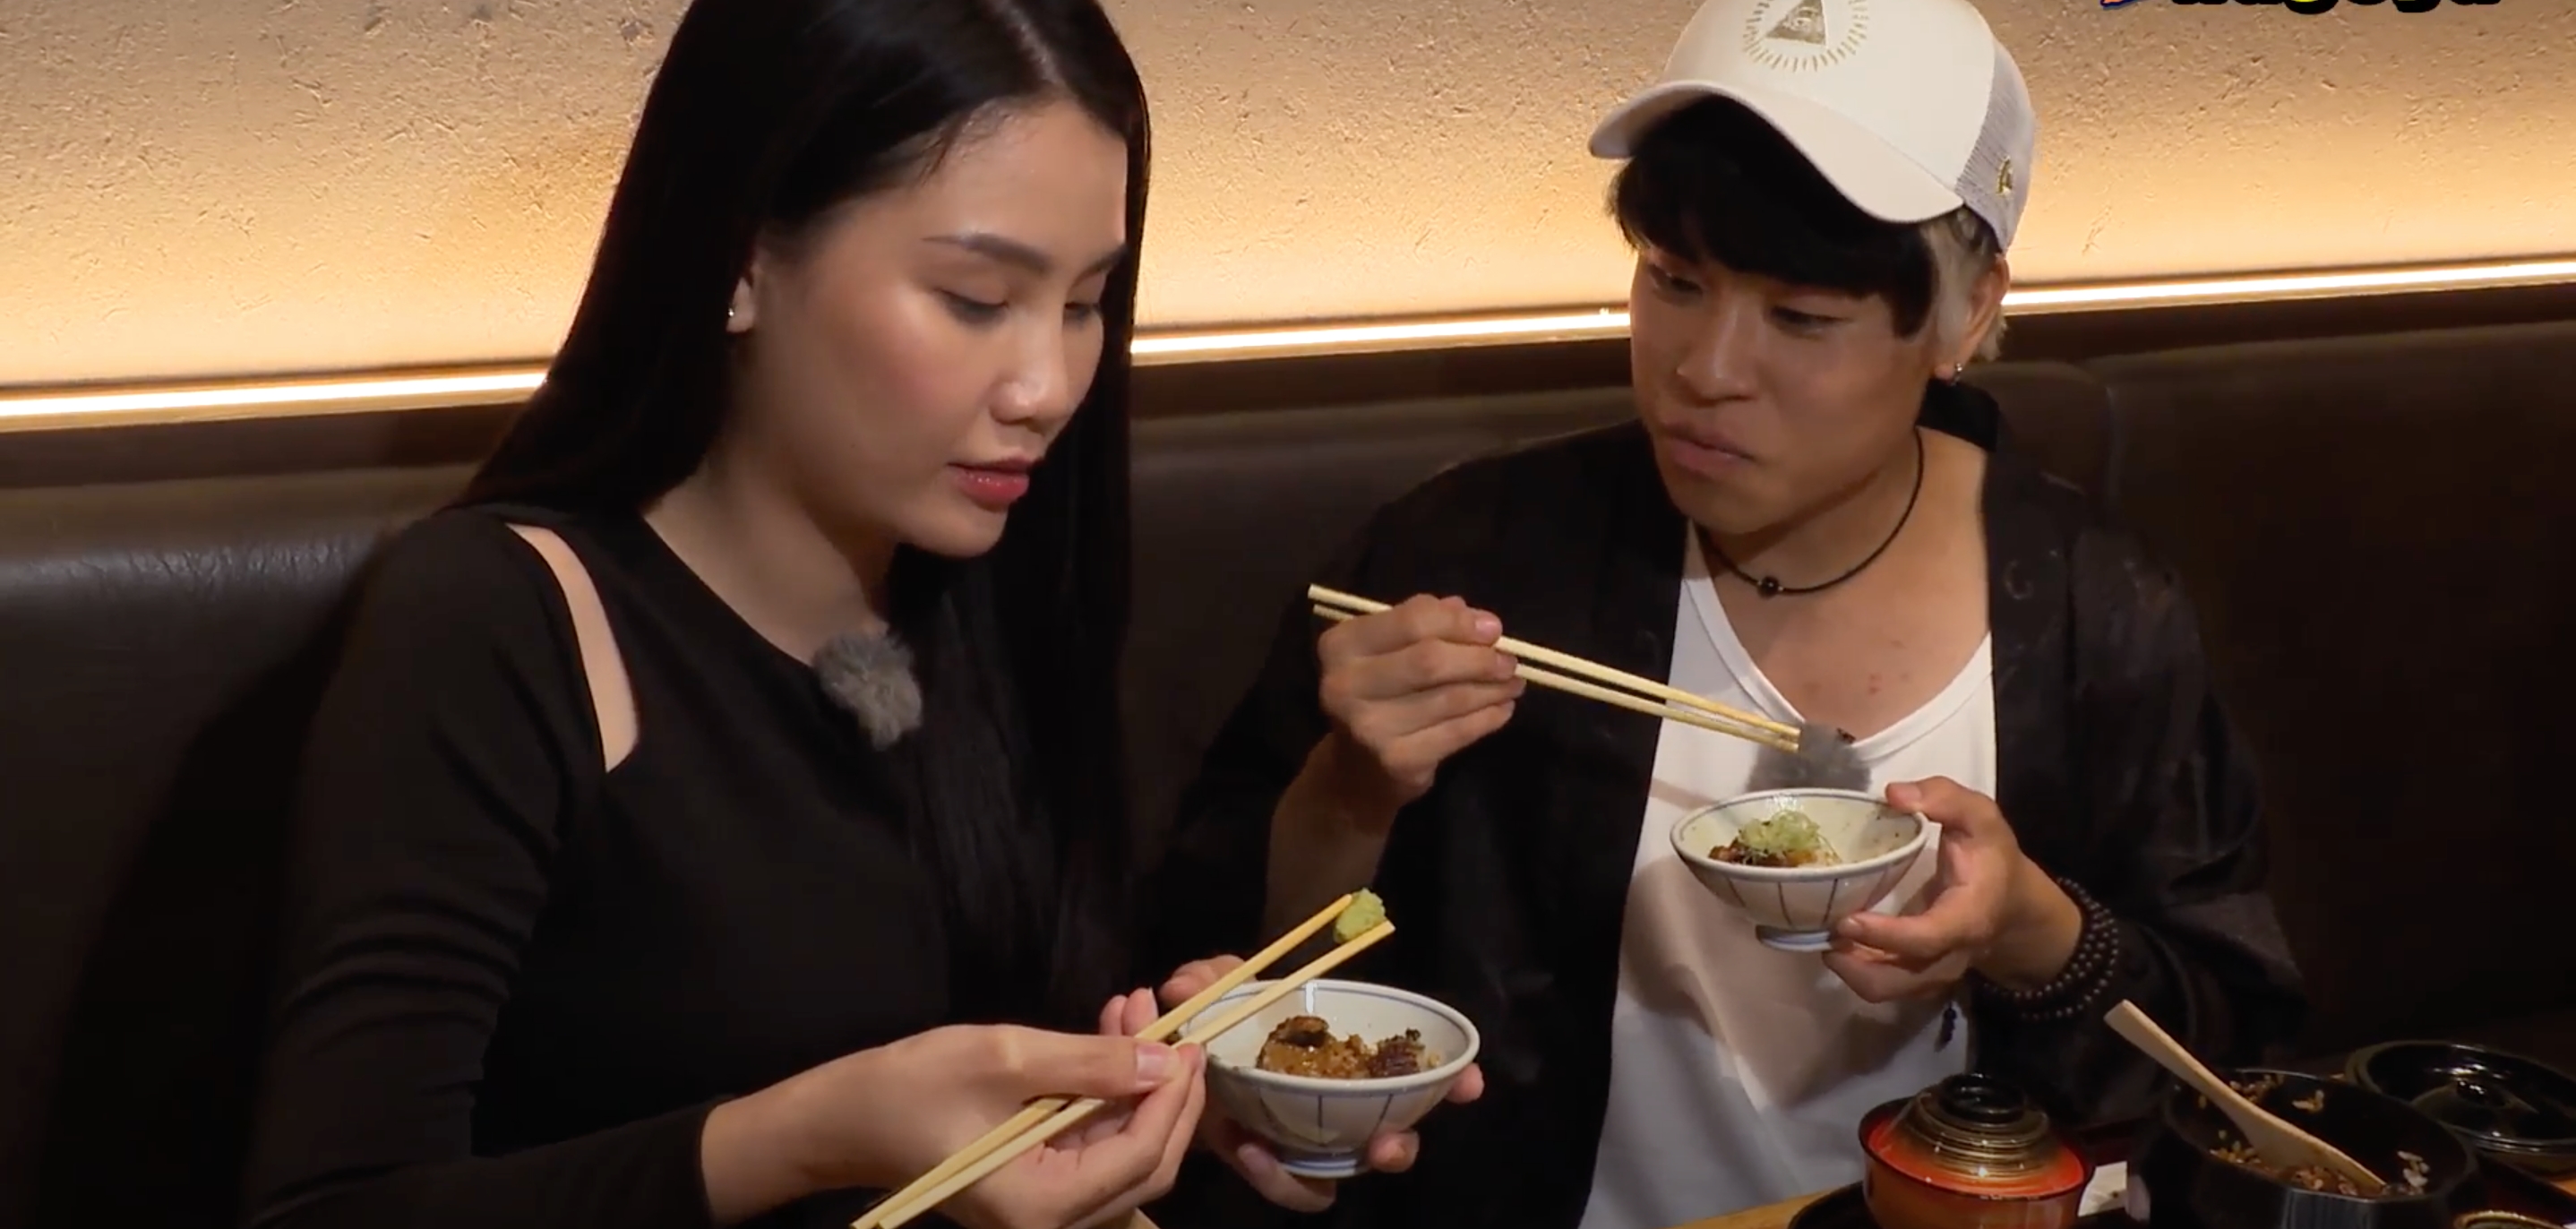 Cặp đôi thưởng thức món cơm lươn ở Nhật Bản. Ảnh: NSX.